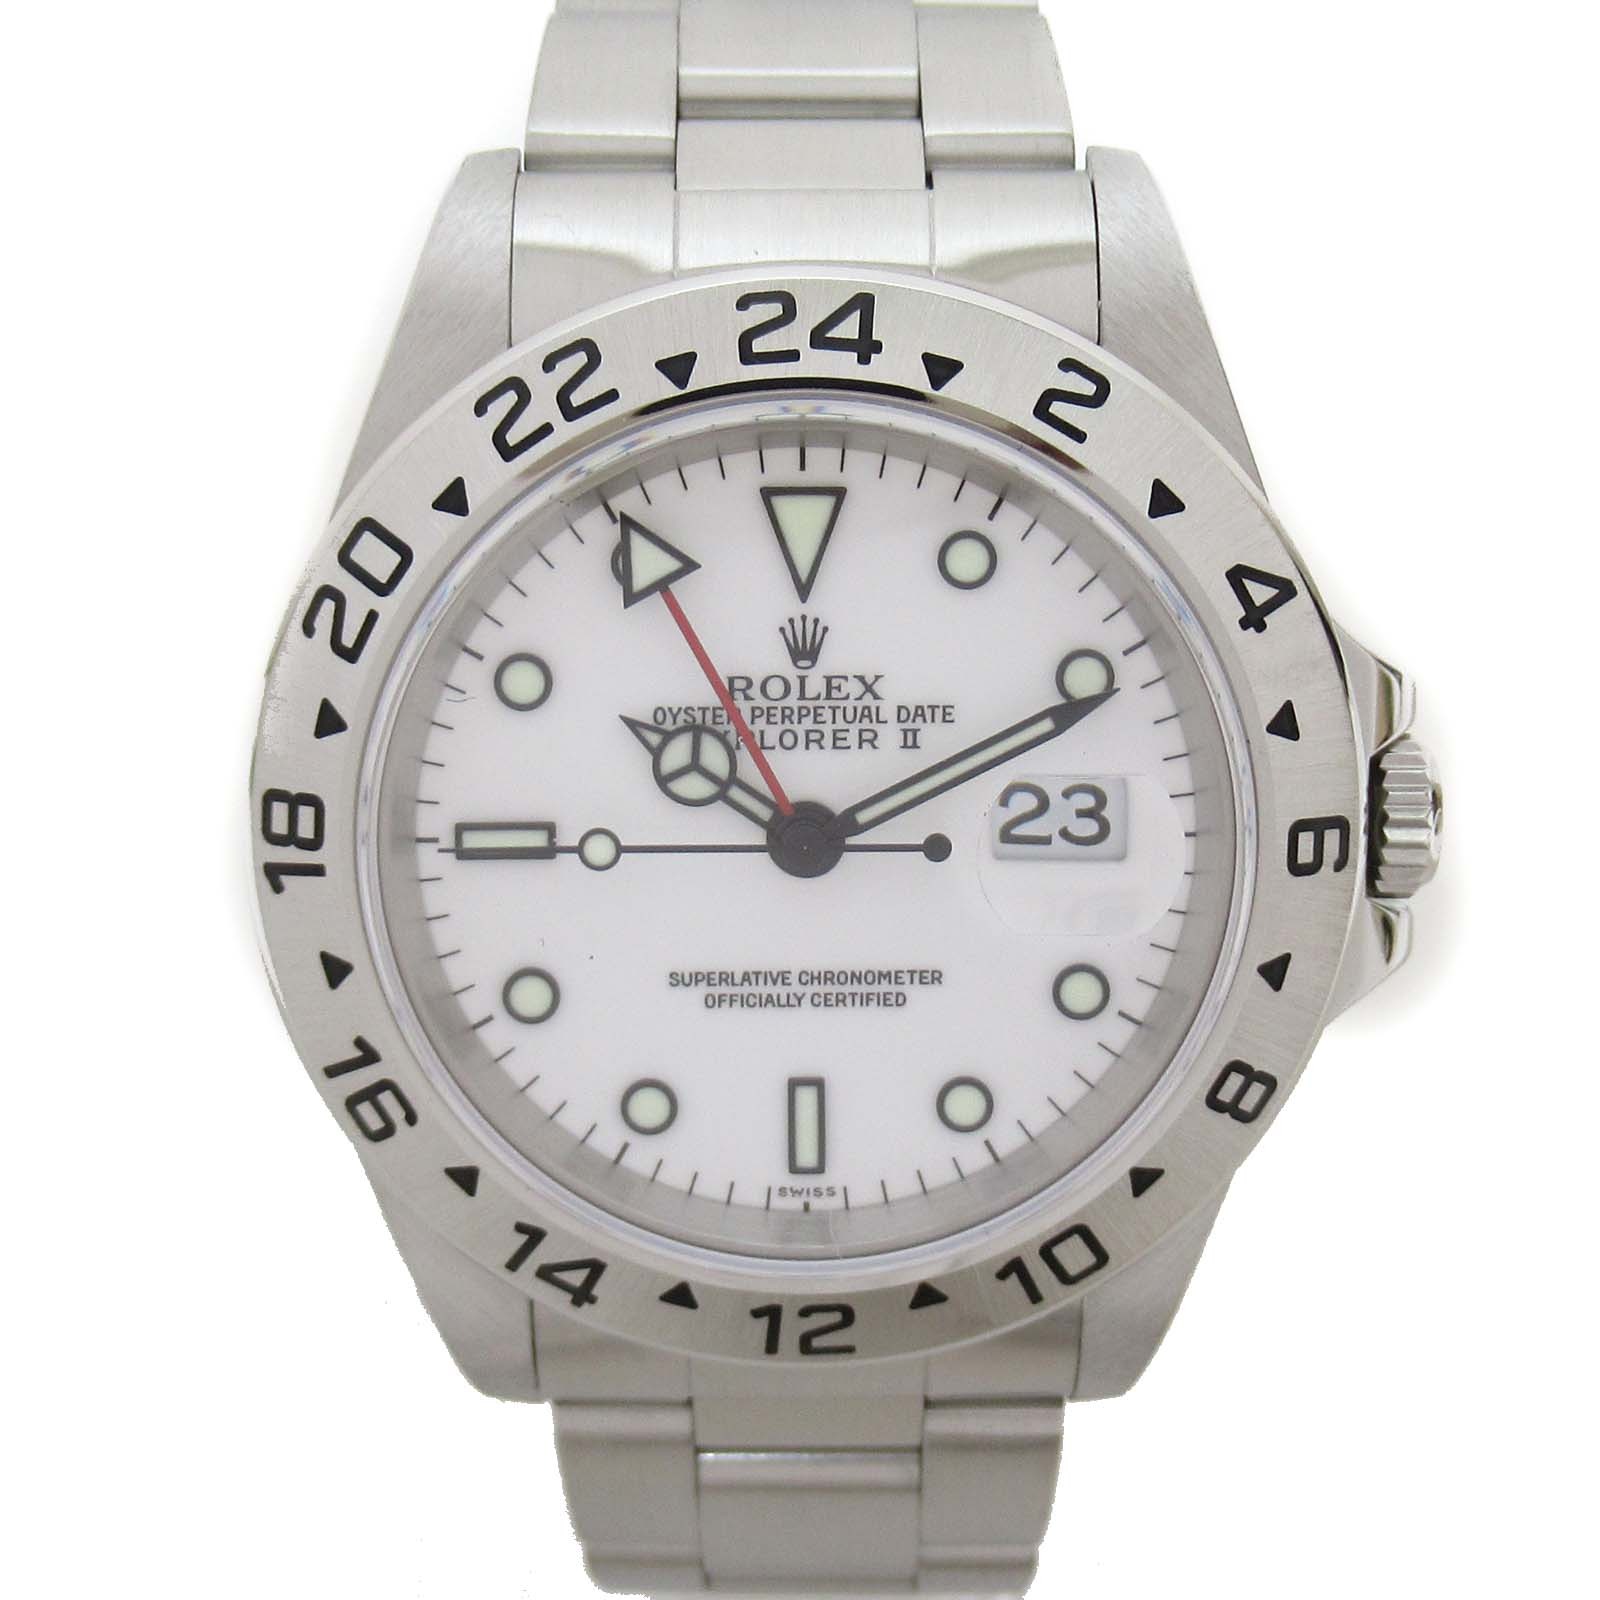 ロレックス ROLEX エクスプローラー2 腕時計 腕時計 時計 ステンレススチール メンズ ホワイト系 WH 16570 【中古】